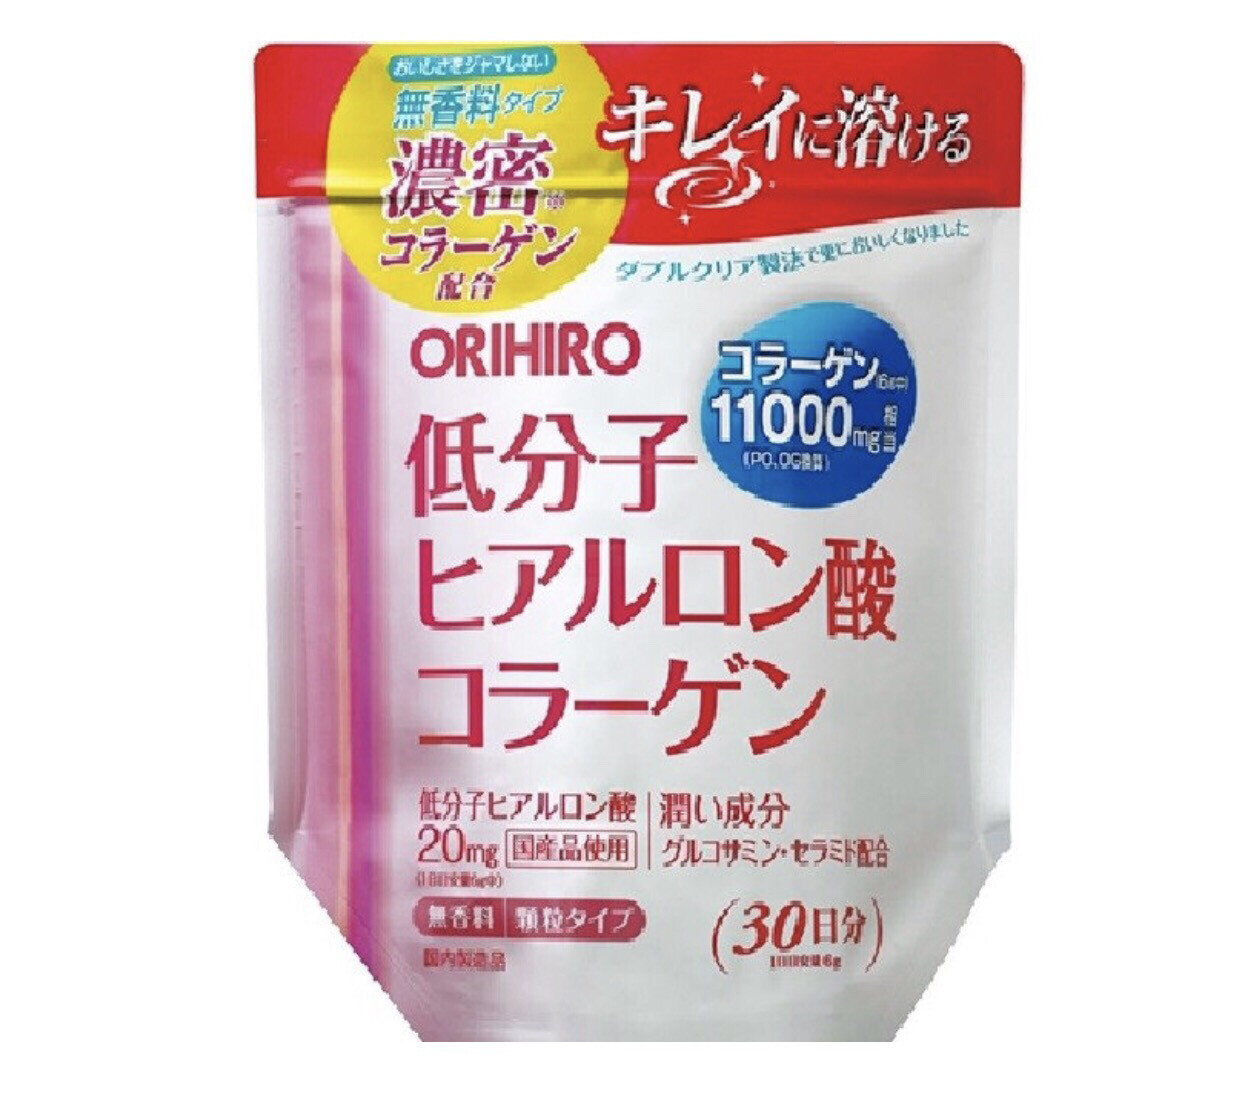 ORIHIRO Плотный коллаген + низкомолекулярная гиалуроновая кислота, 180гр на 30 дней